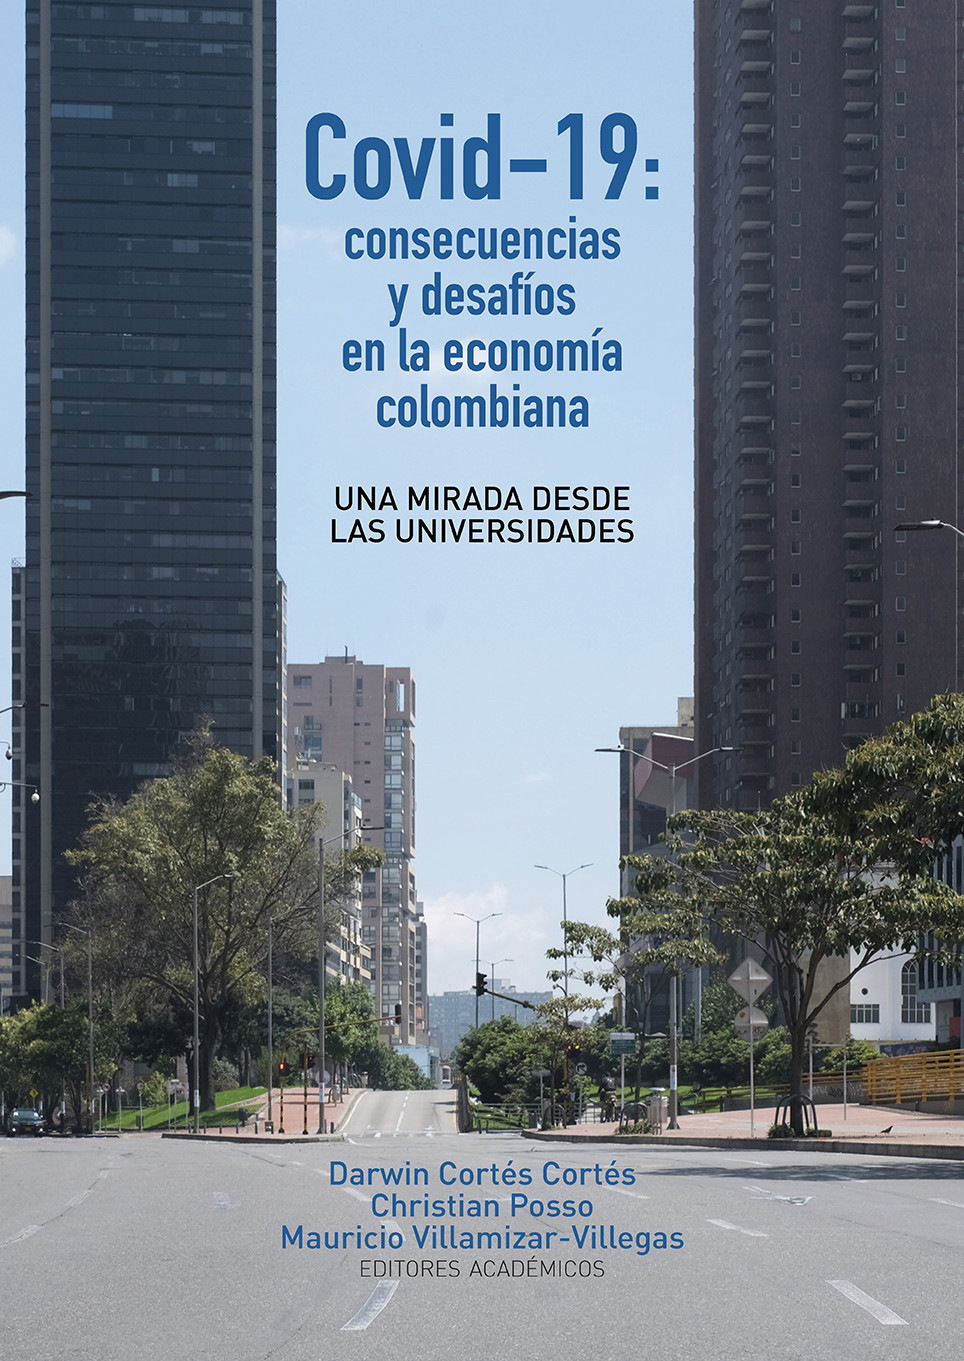 Imagen de portada del libro Covid-19 consecuencias y desafíos en la economía colombiana